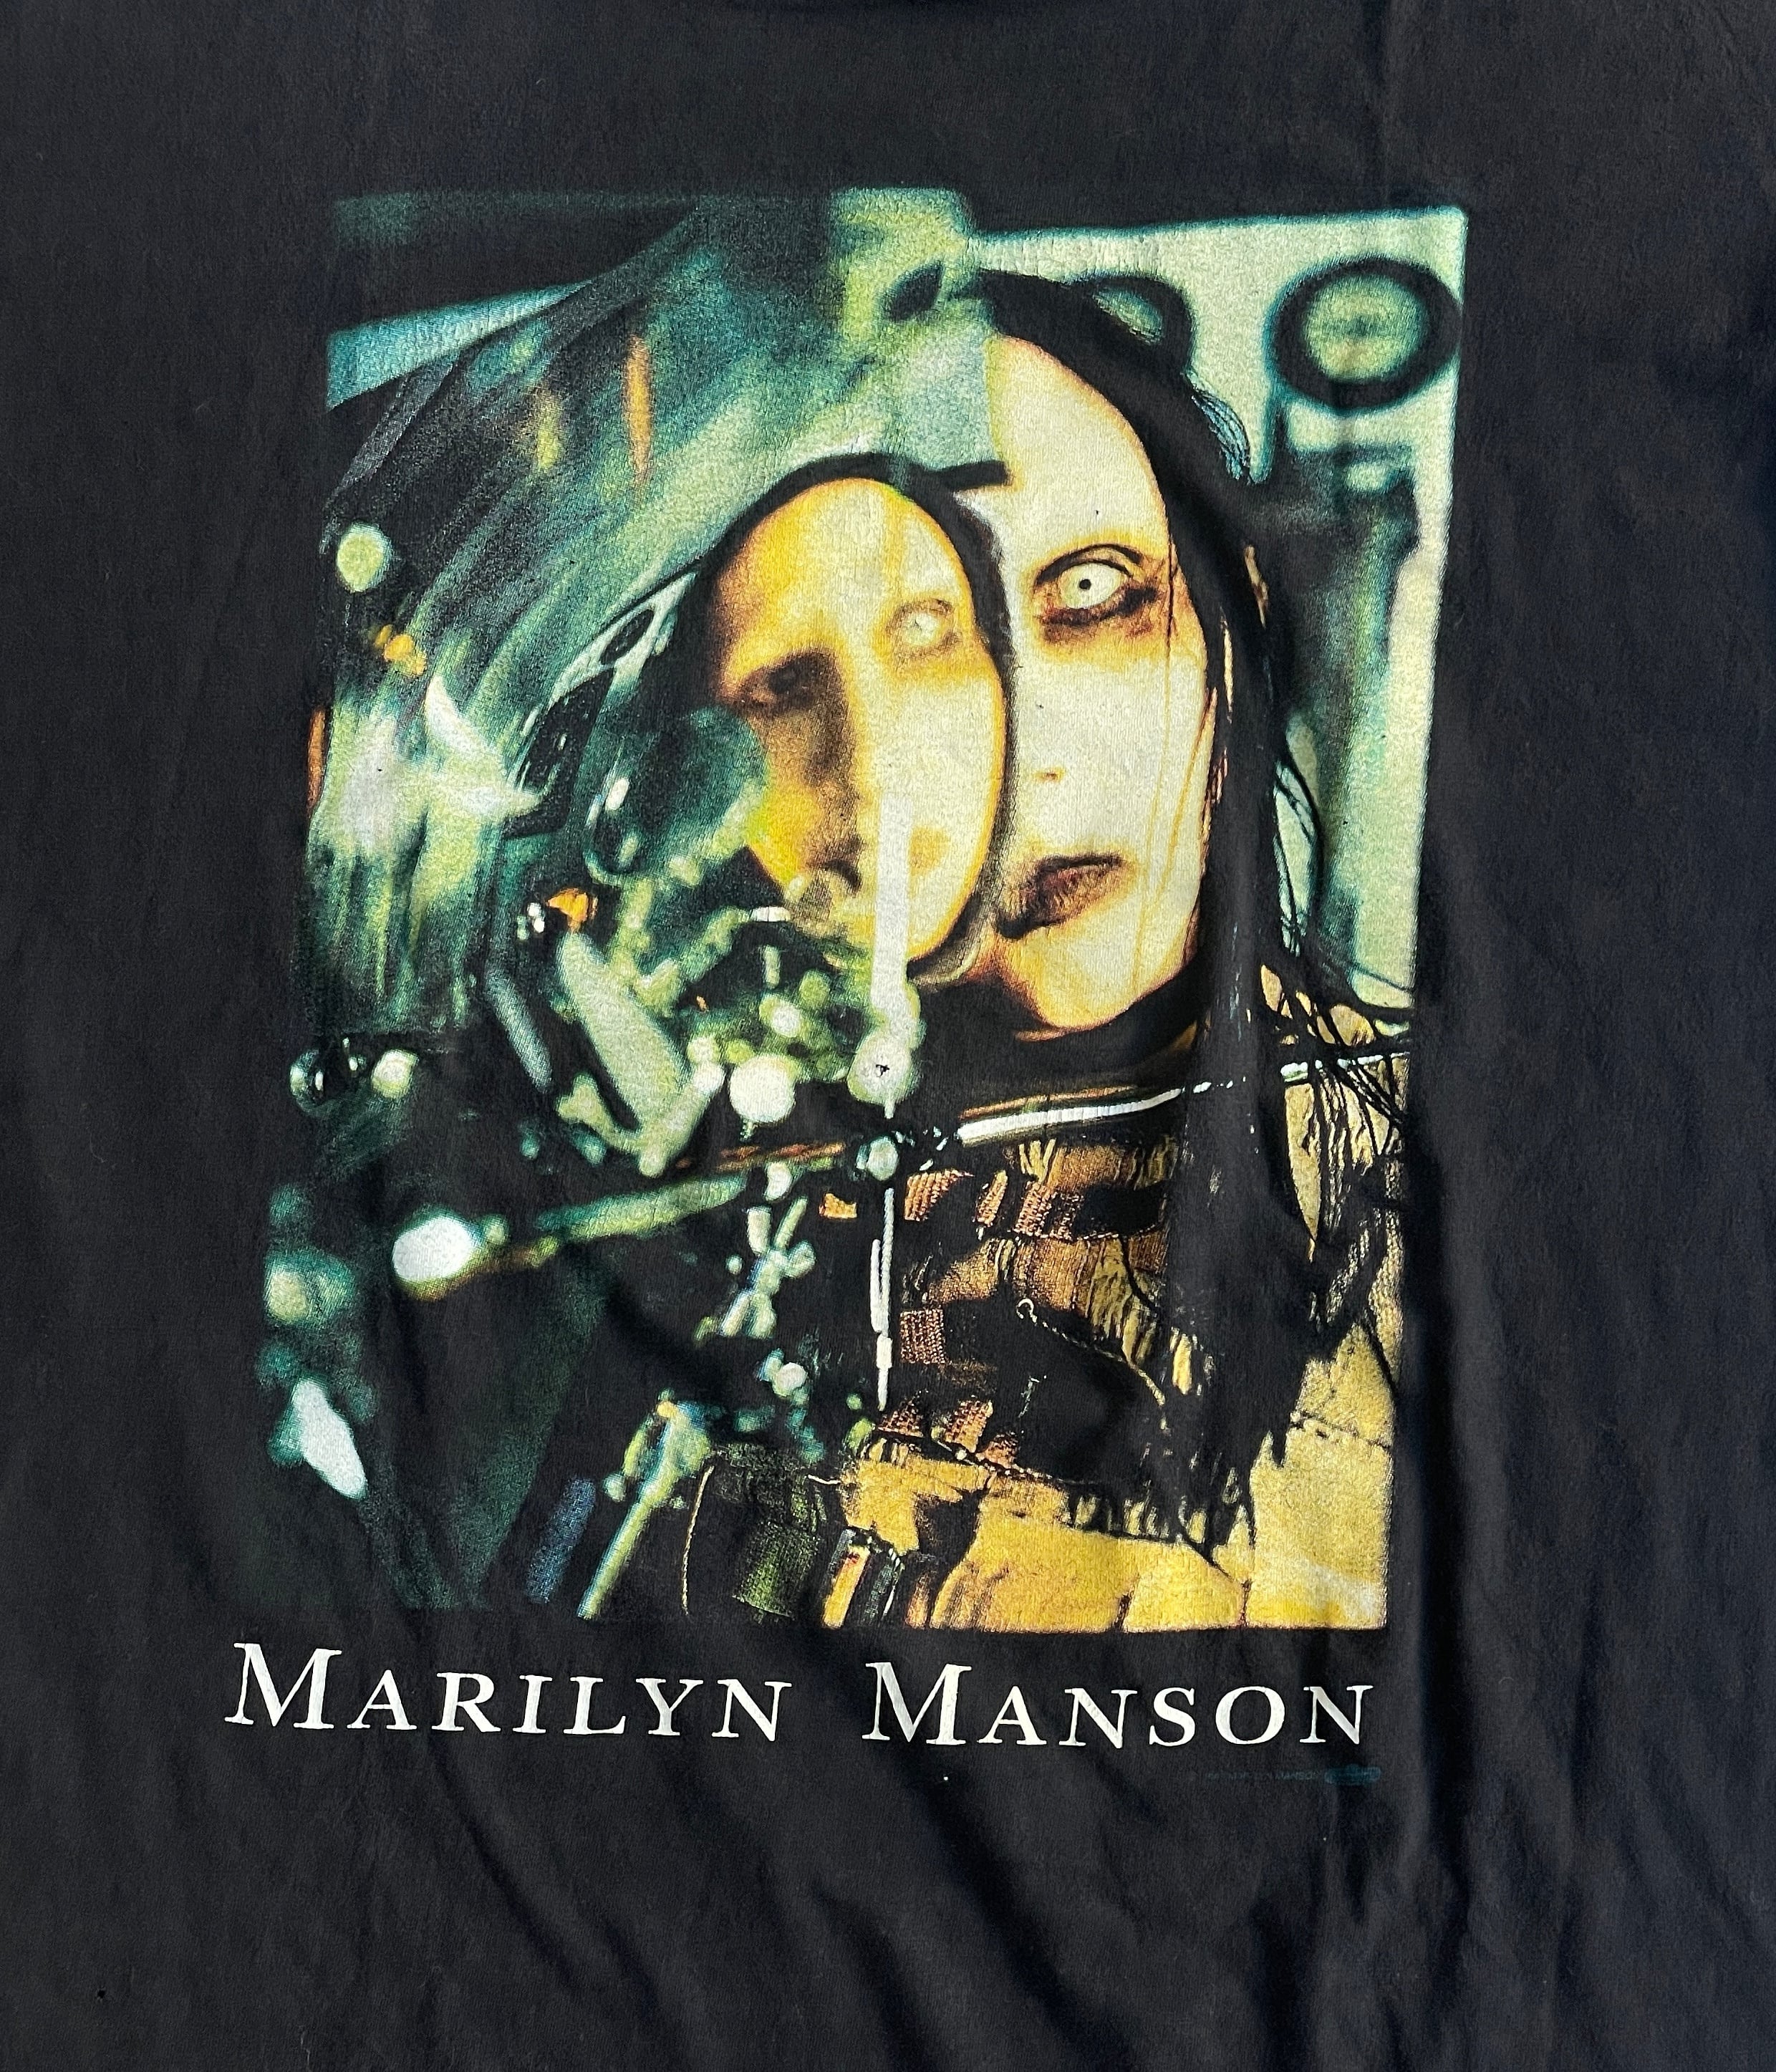 コピーライト 正規品 90s マリリンマンソン バンドTシャツ